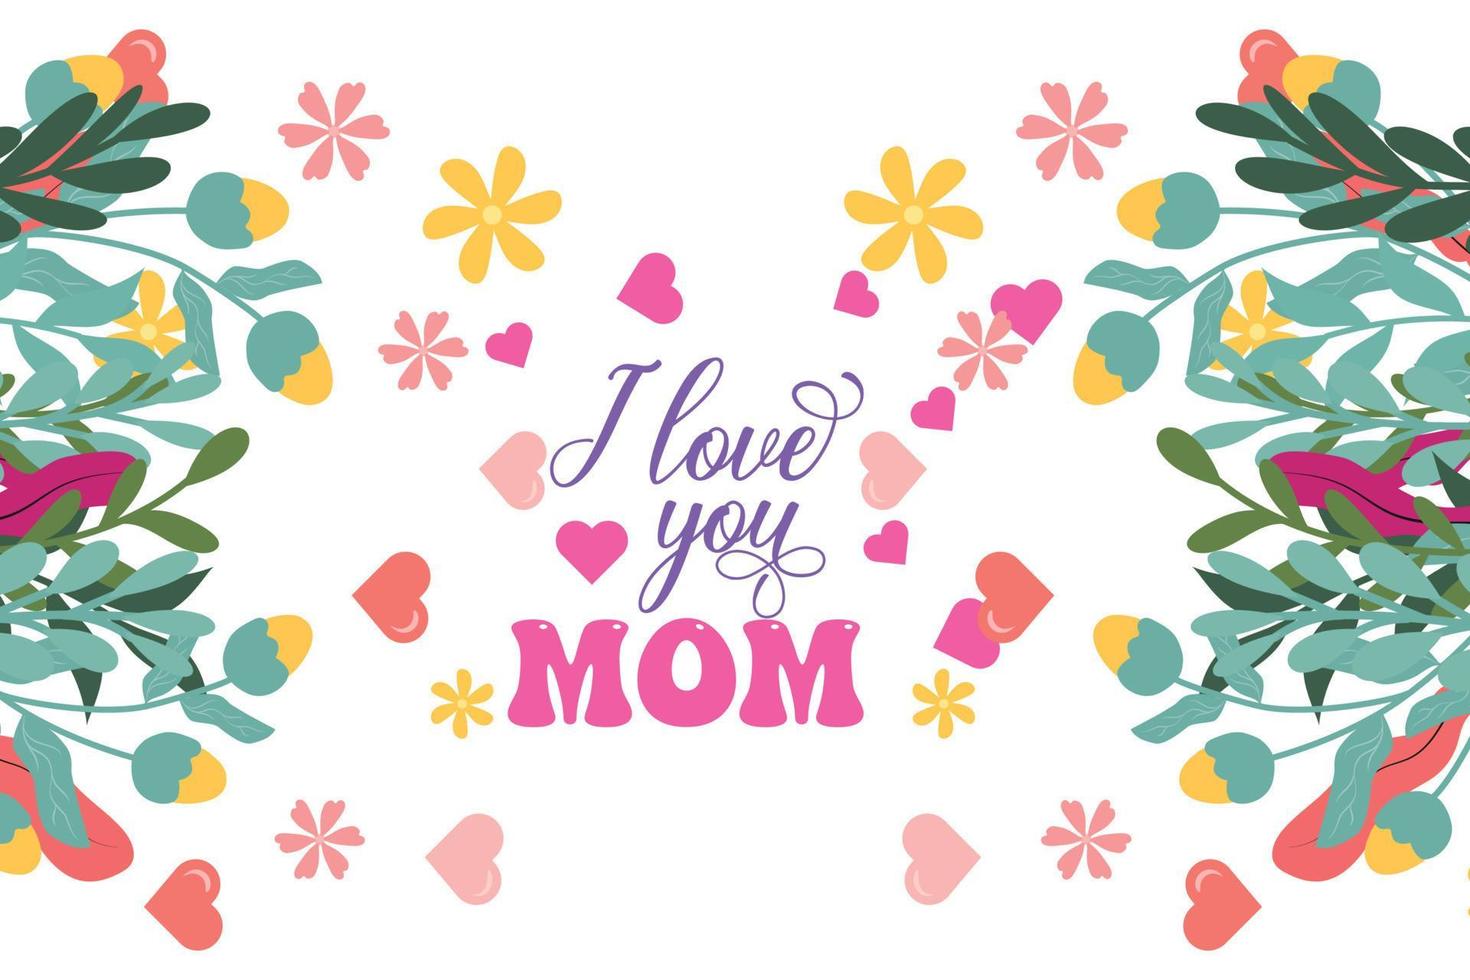 feliz mães dia celebração cumprimento cartão fundo mãe e criança amor vetor